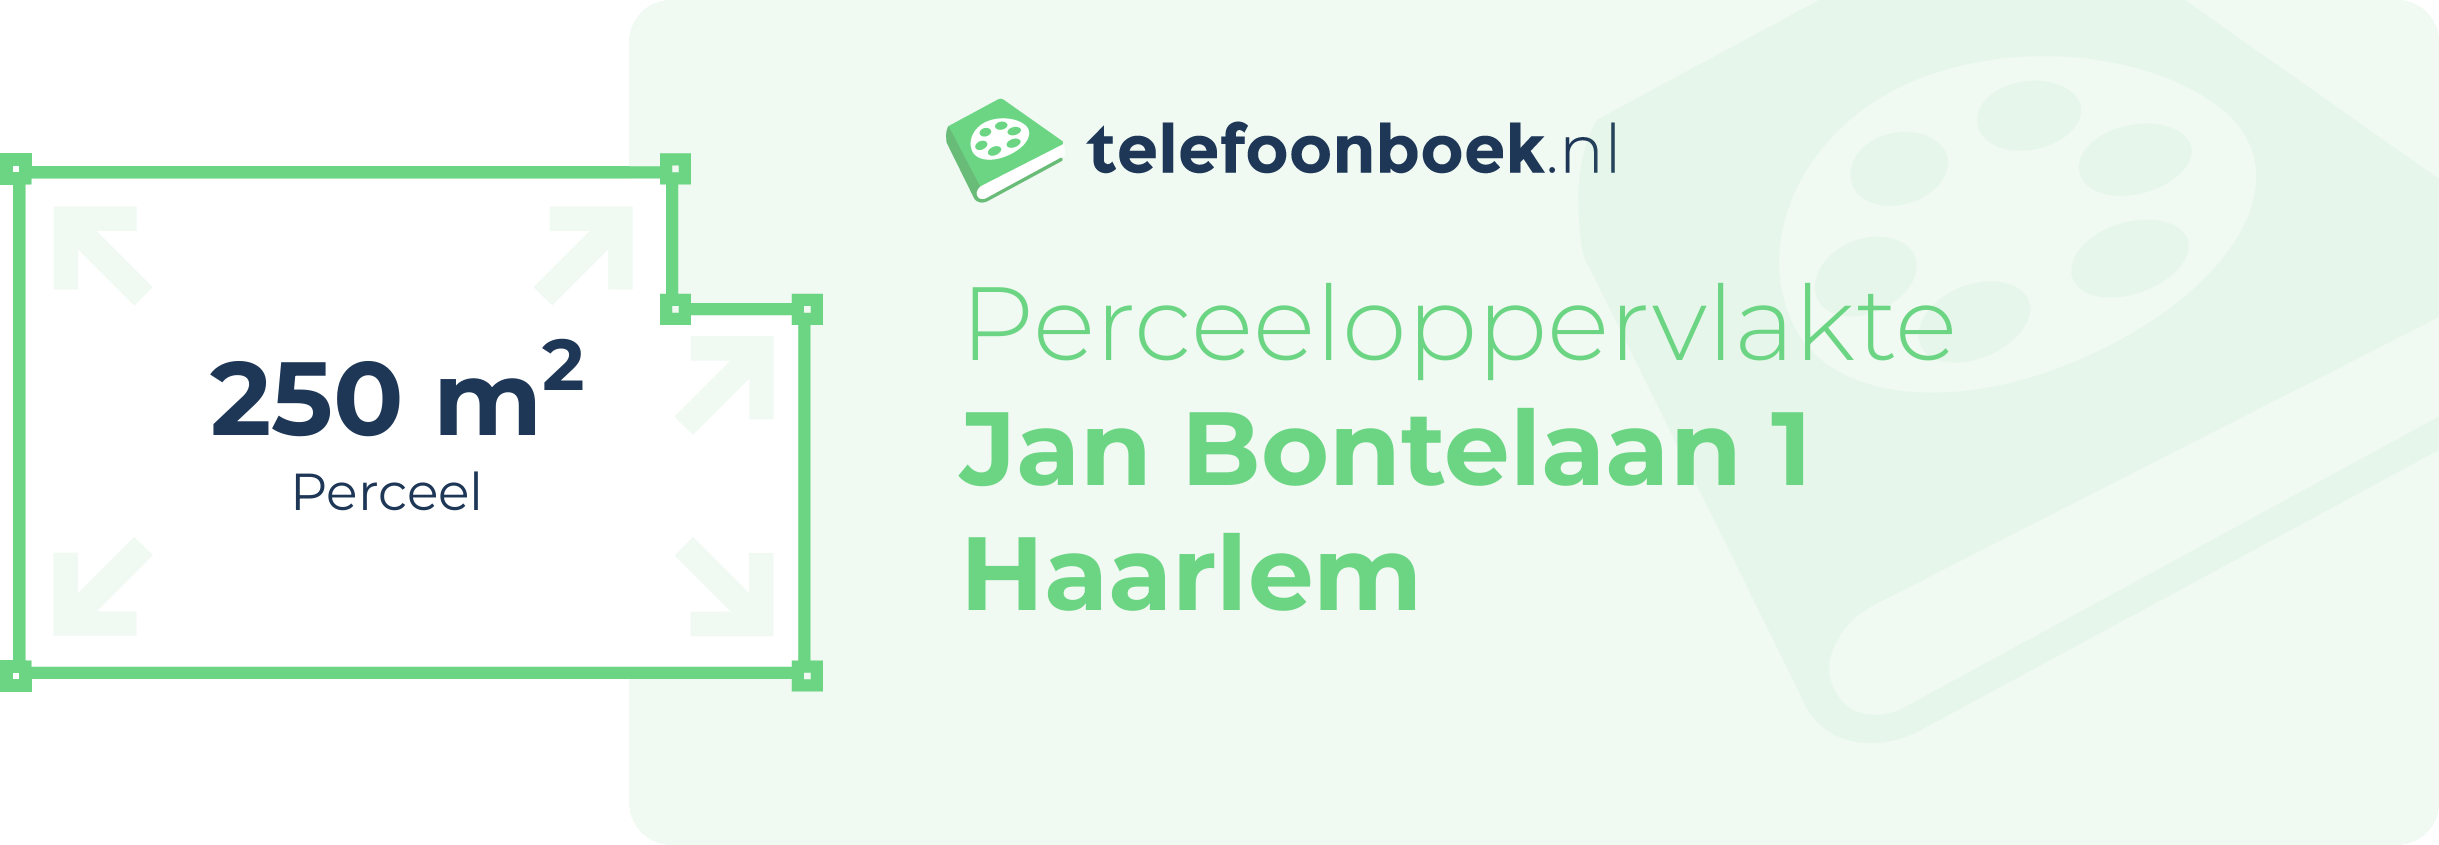 Perceeloppervlakte Jan Bontelaan 1 Haarlem